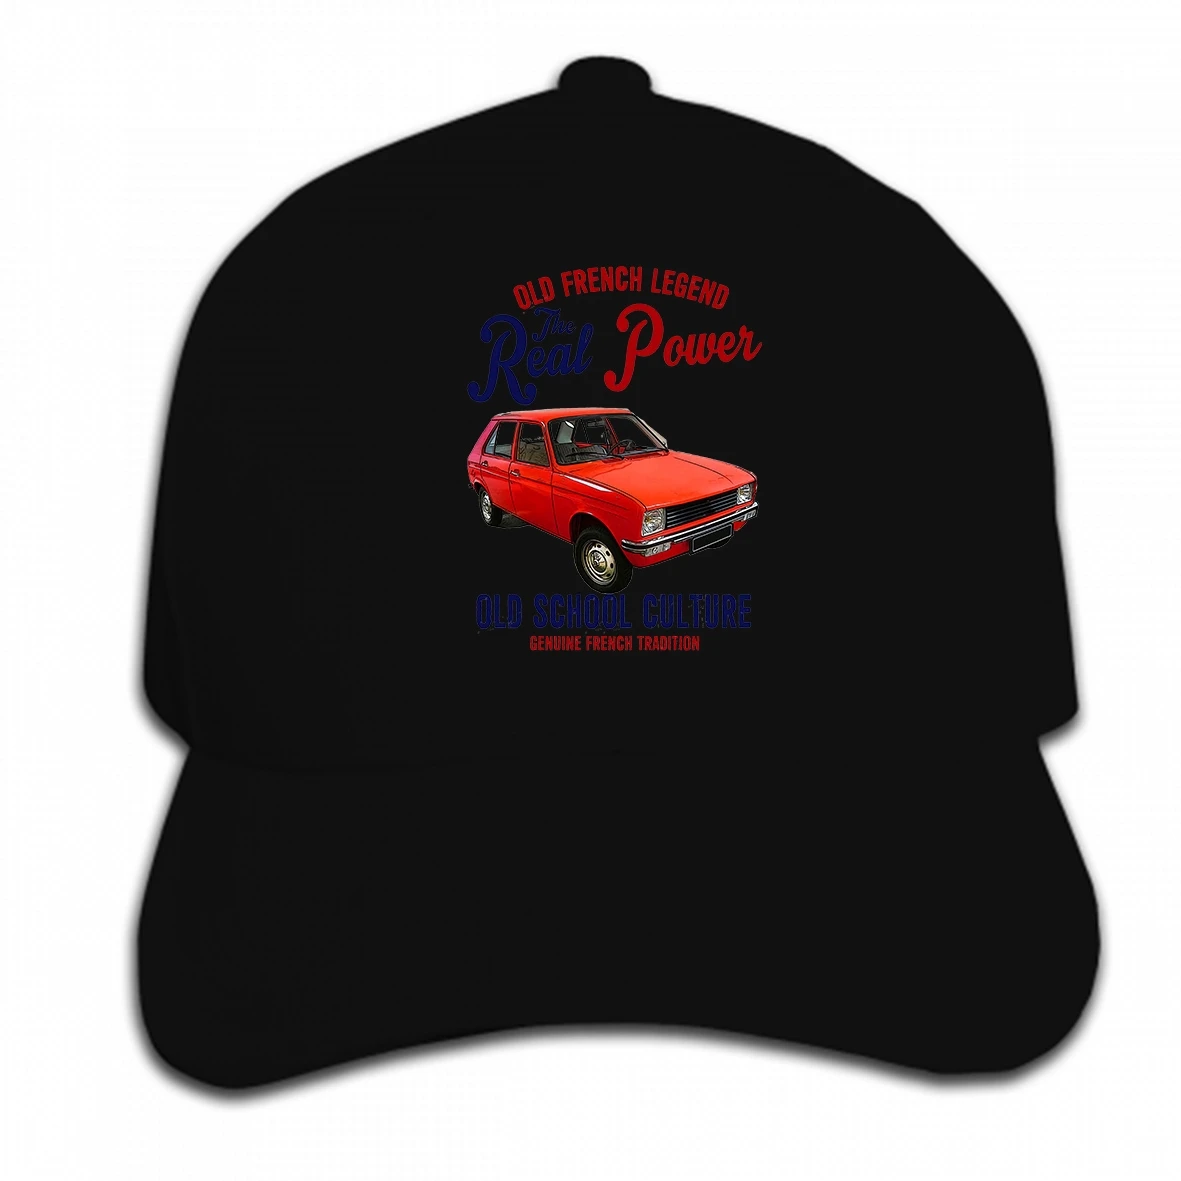 Print Custom Baseball Cap Design Cool Man French Car Peugeot 104 Real Power New Graphic Hat Peaked Cap